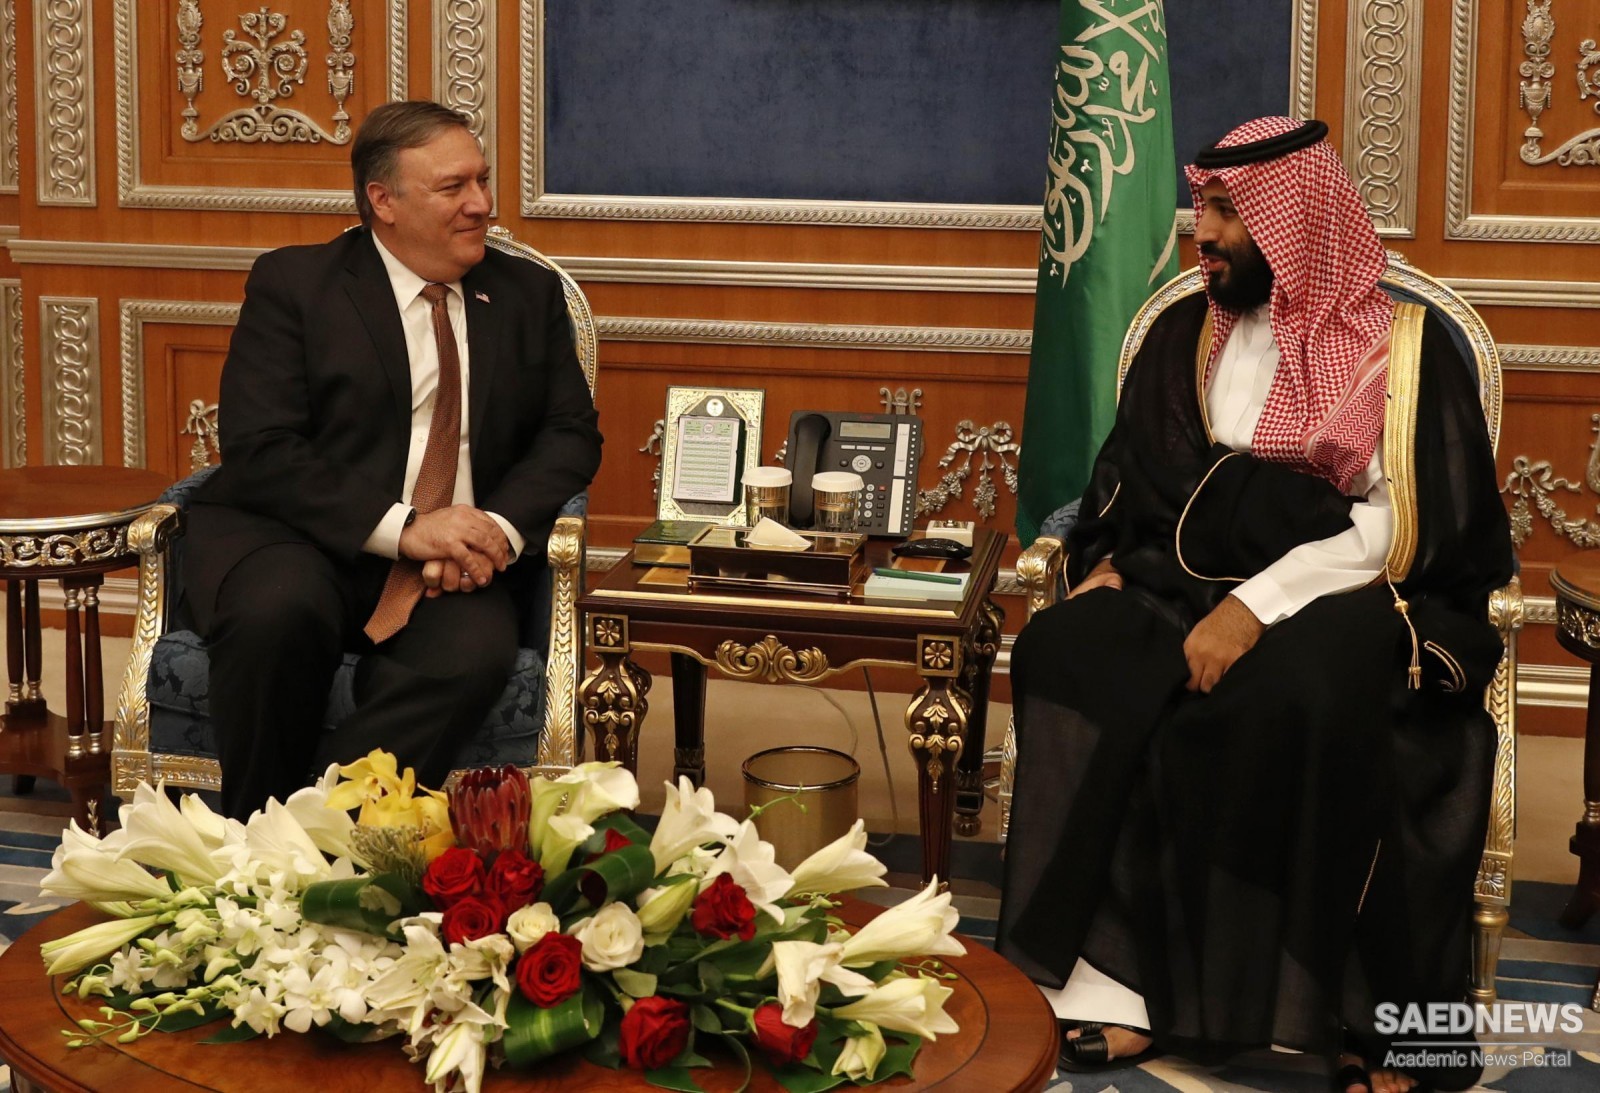 अमेरिकी विदेश मंत्री माइकल पोम्पिओ ने सऊदी क्राउन प्रिंस को इजरायल के साथ संबंधों को सामान्य बनाने के लिए धमकी दी